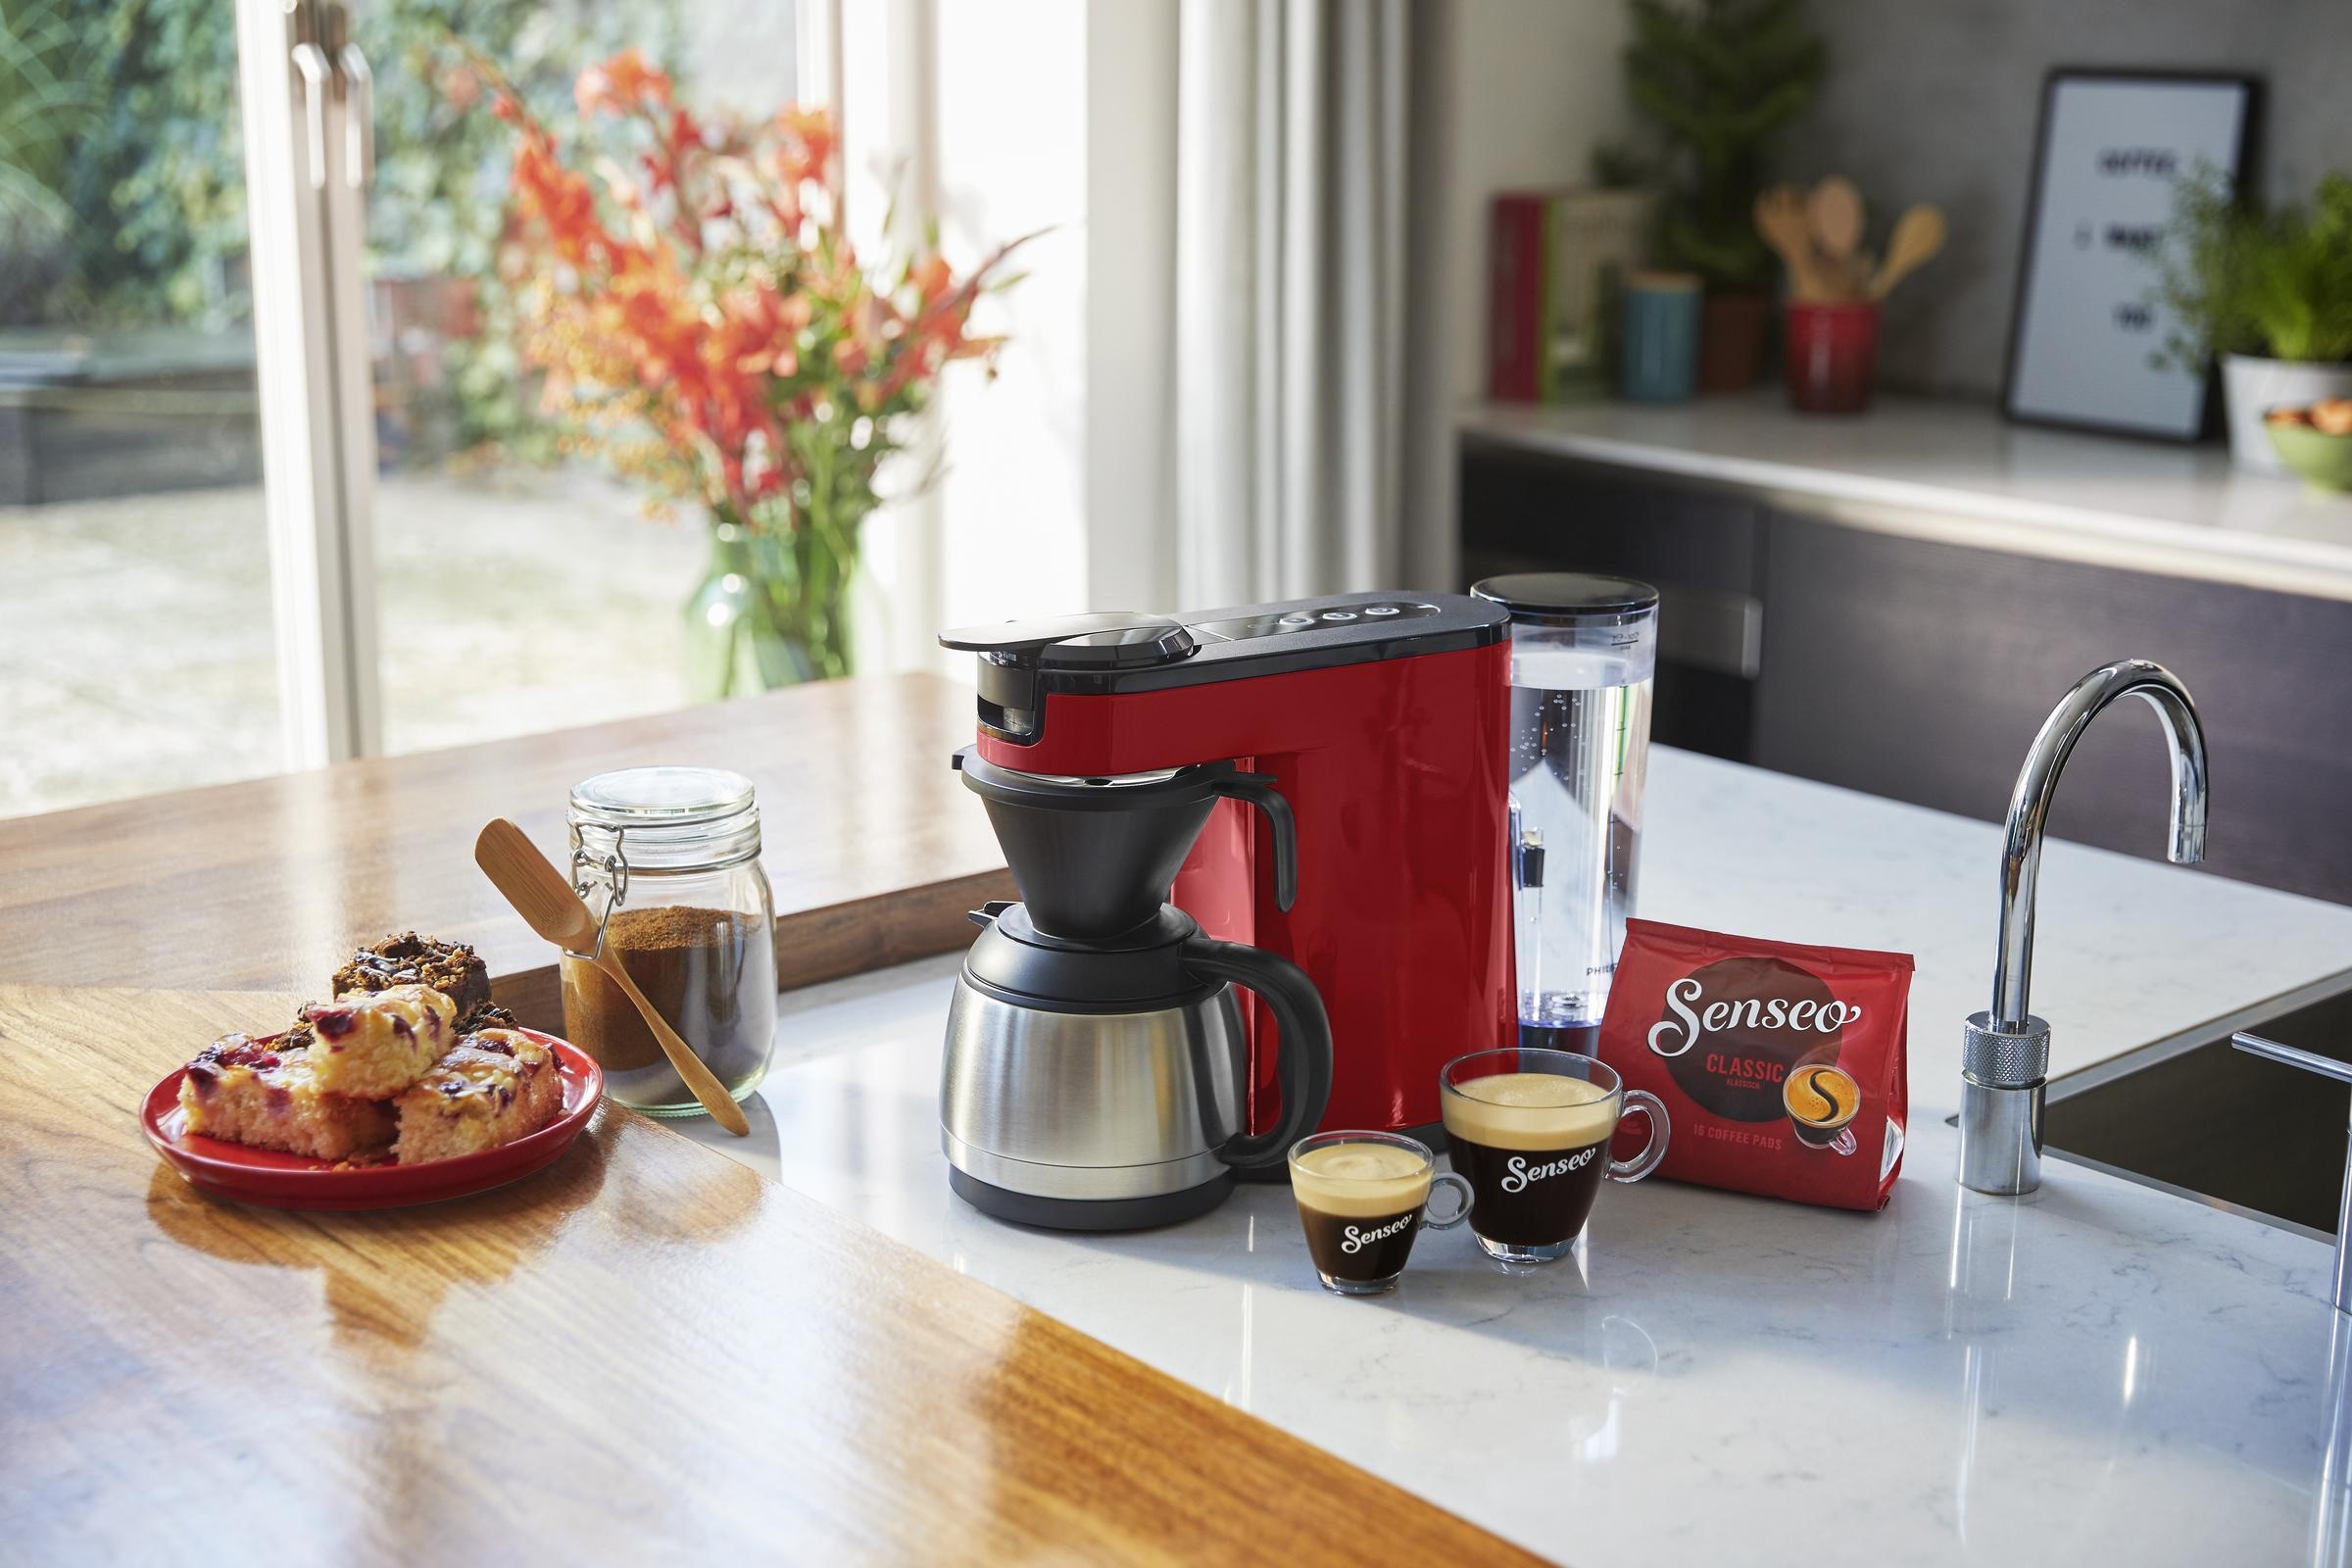 Philips Senseo Kaffeepadmaschine »SENSEO® Switch HD6592/80«, 1 l Kaffeekanne,  Papierfilter, Kaffeepaddose im Wert von 9,90 € UVP jetzt bestellen bei OTTO